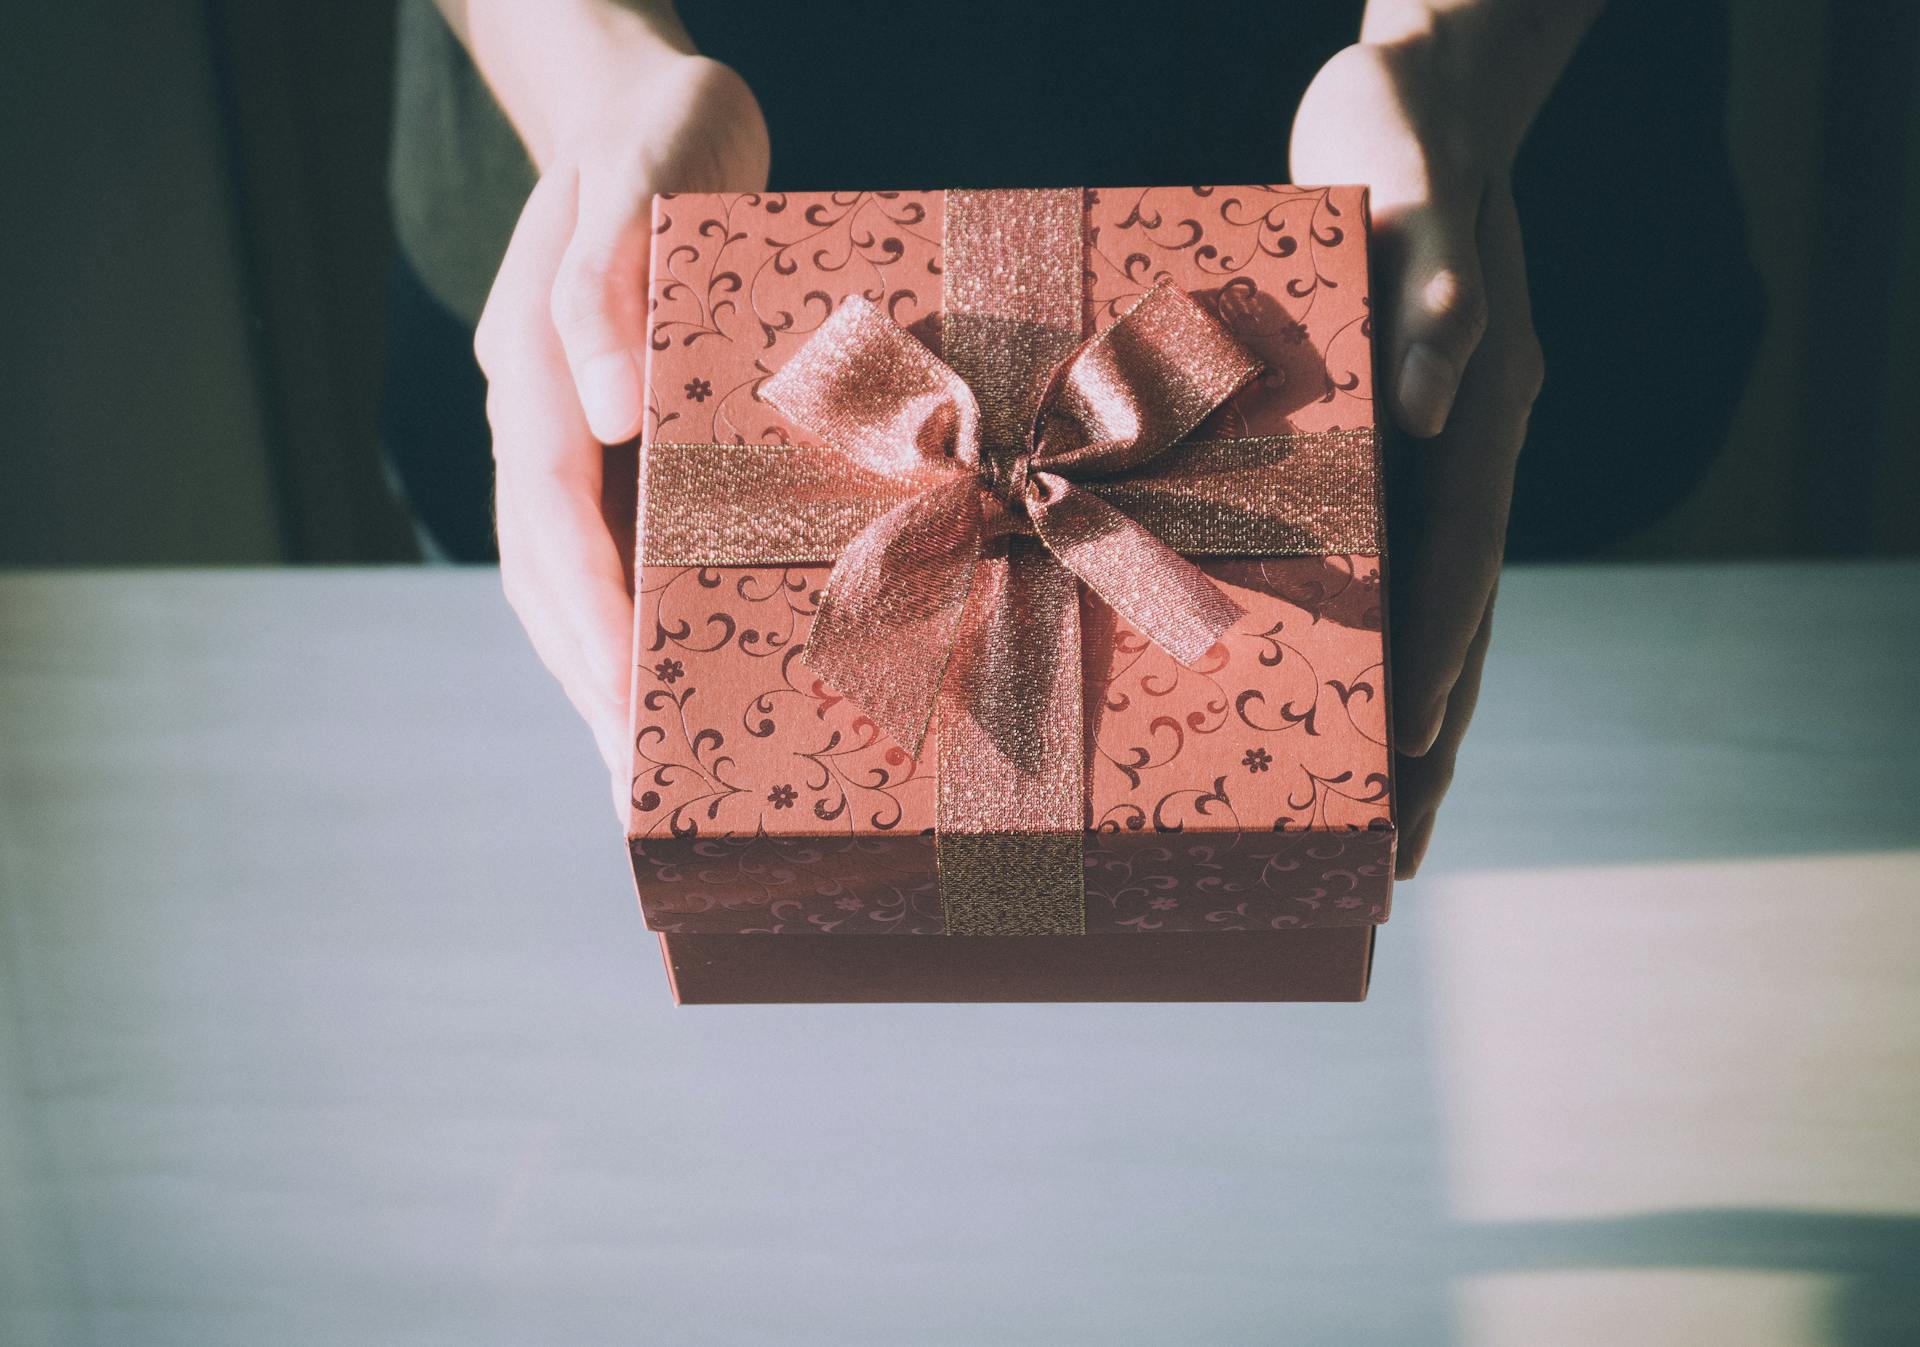 Une personne tenant un paquet cadeau | Source : Pexels